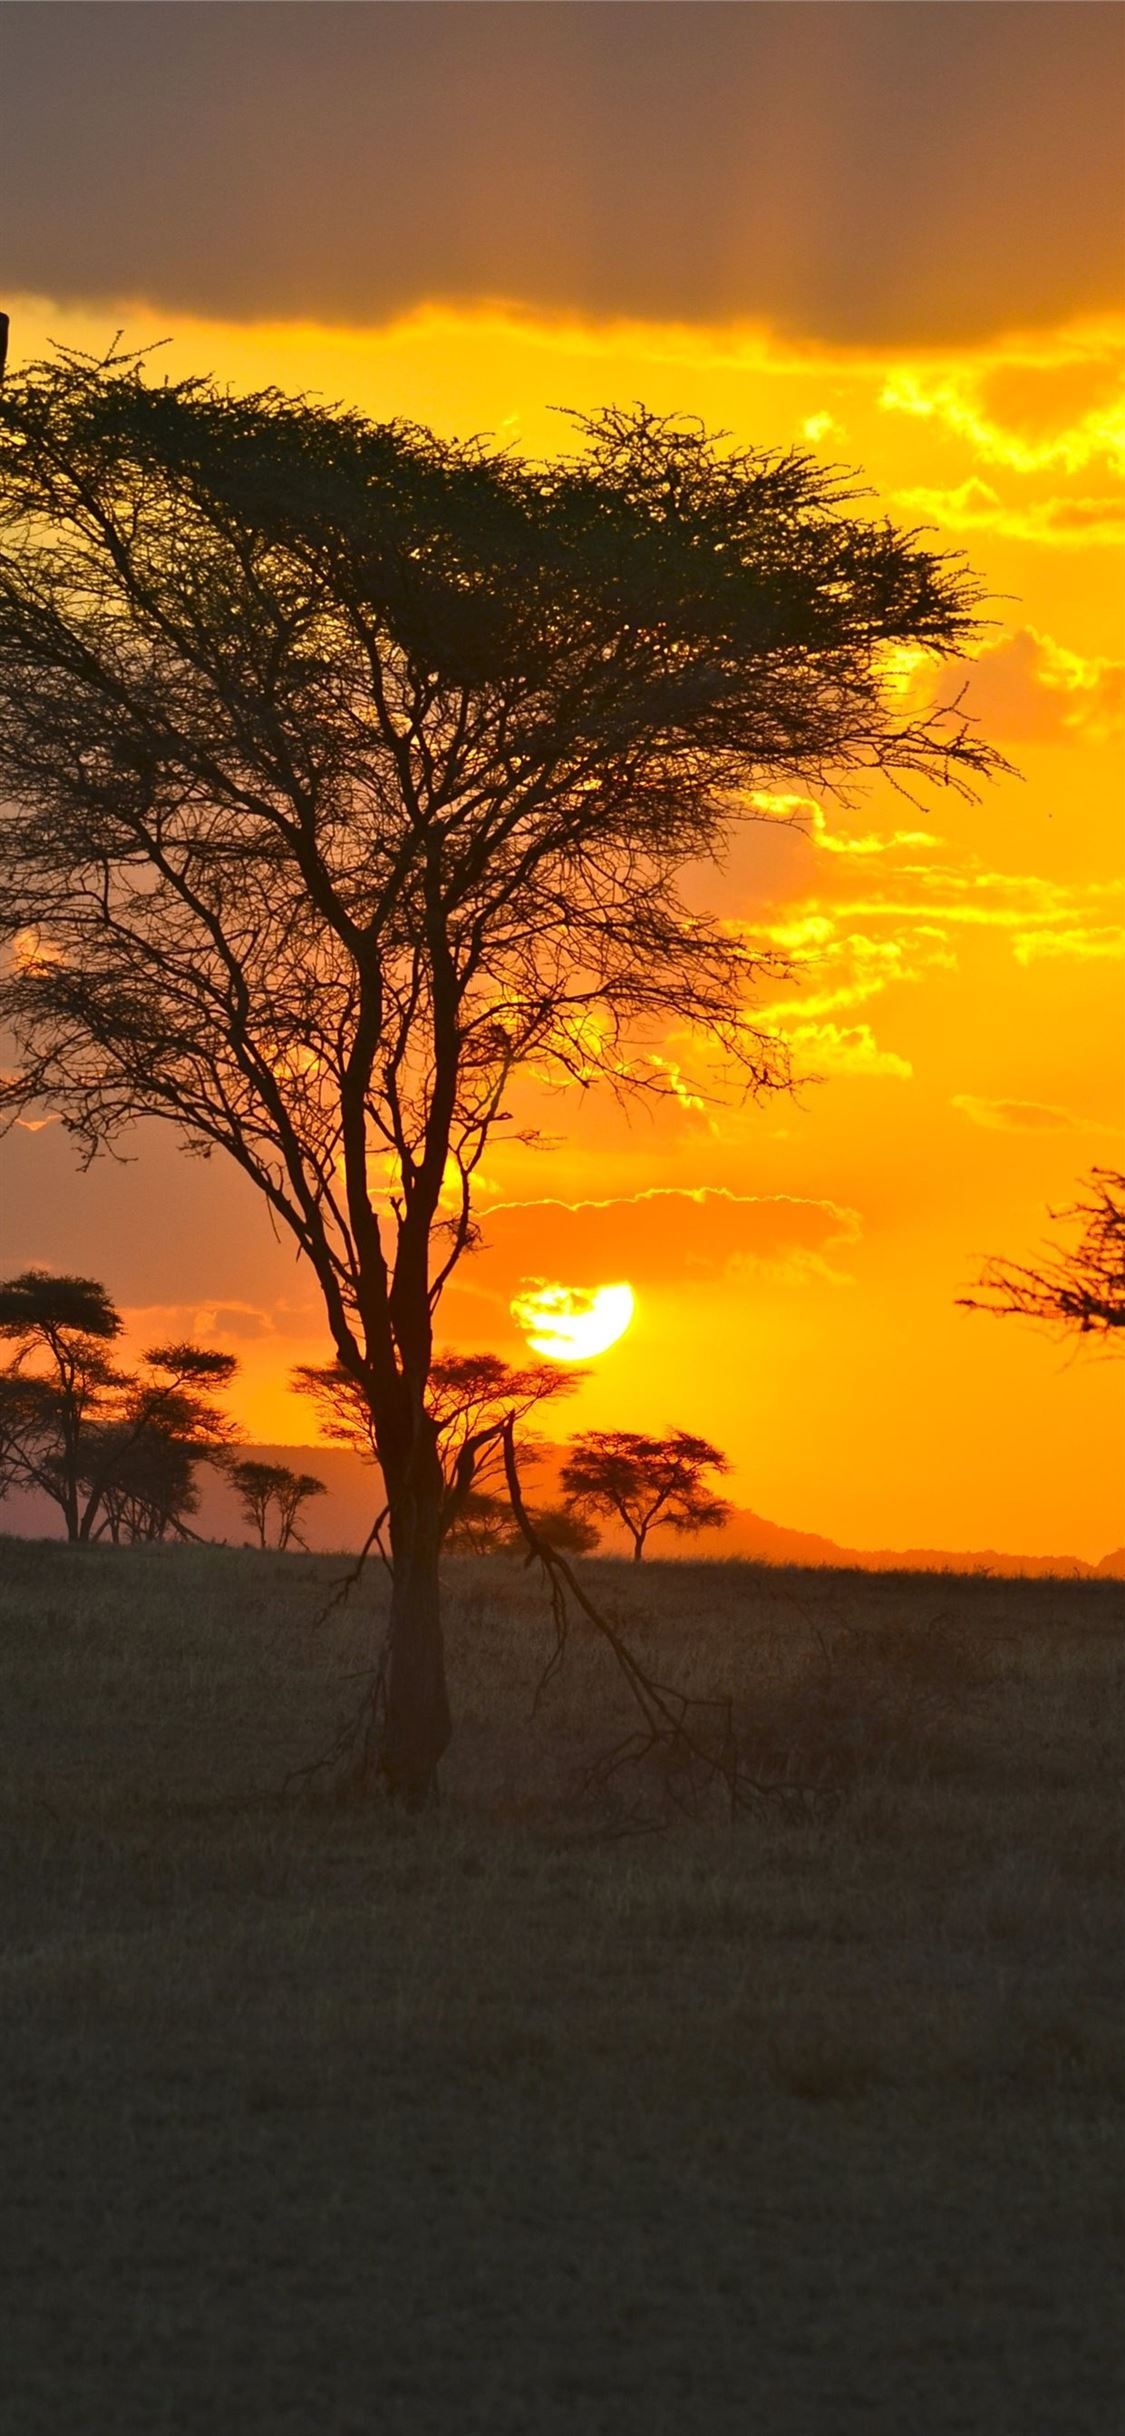 Serengeti sunset, Beautiful landscapes, Tanzania's beauty, Natural wonder, 1130x2440 HD Phone